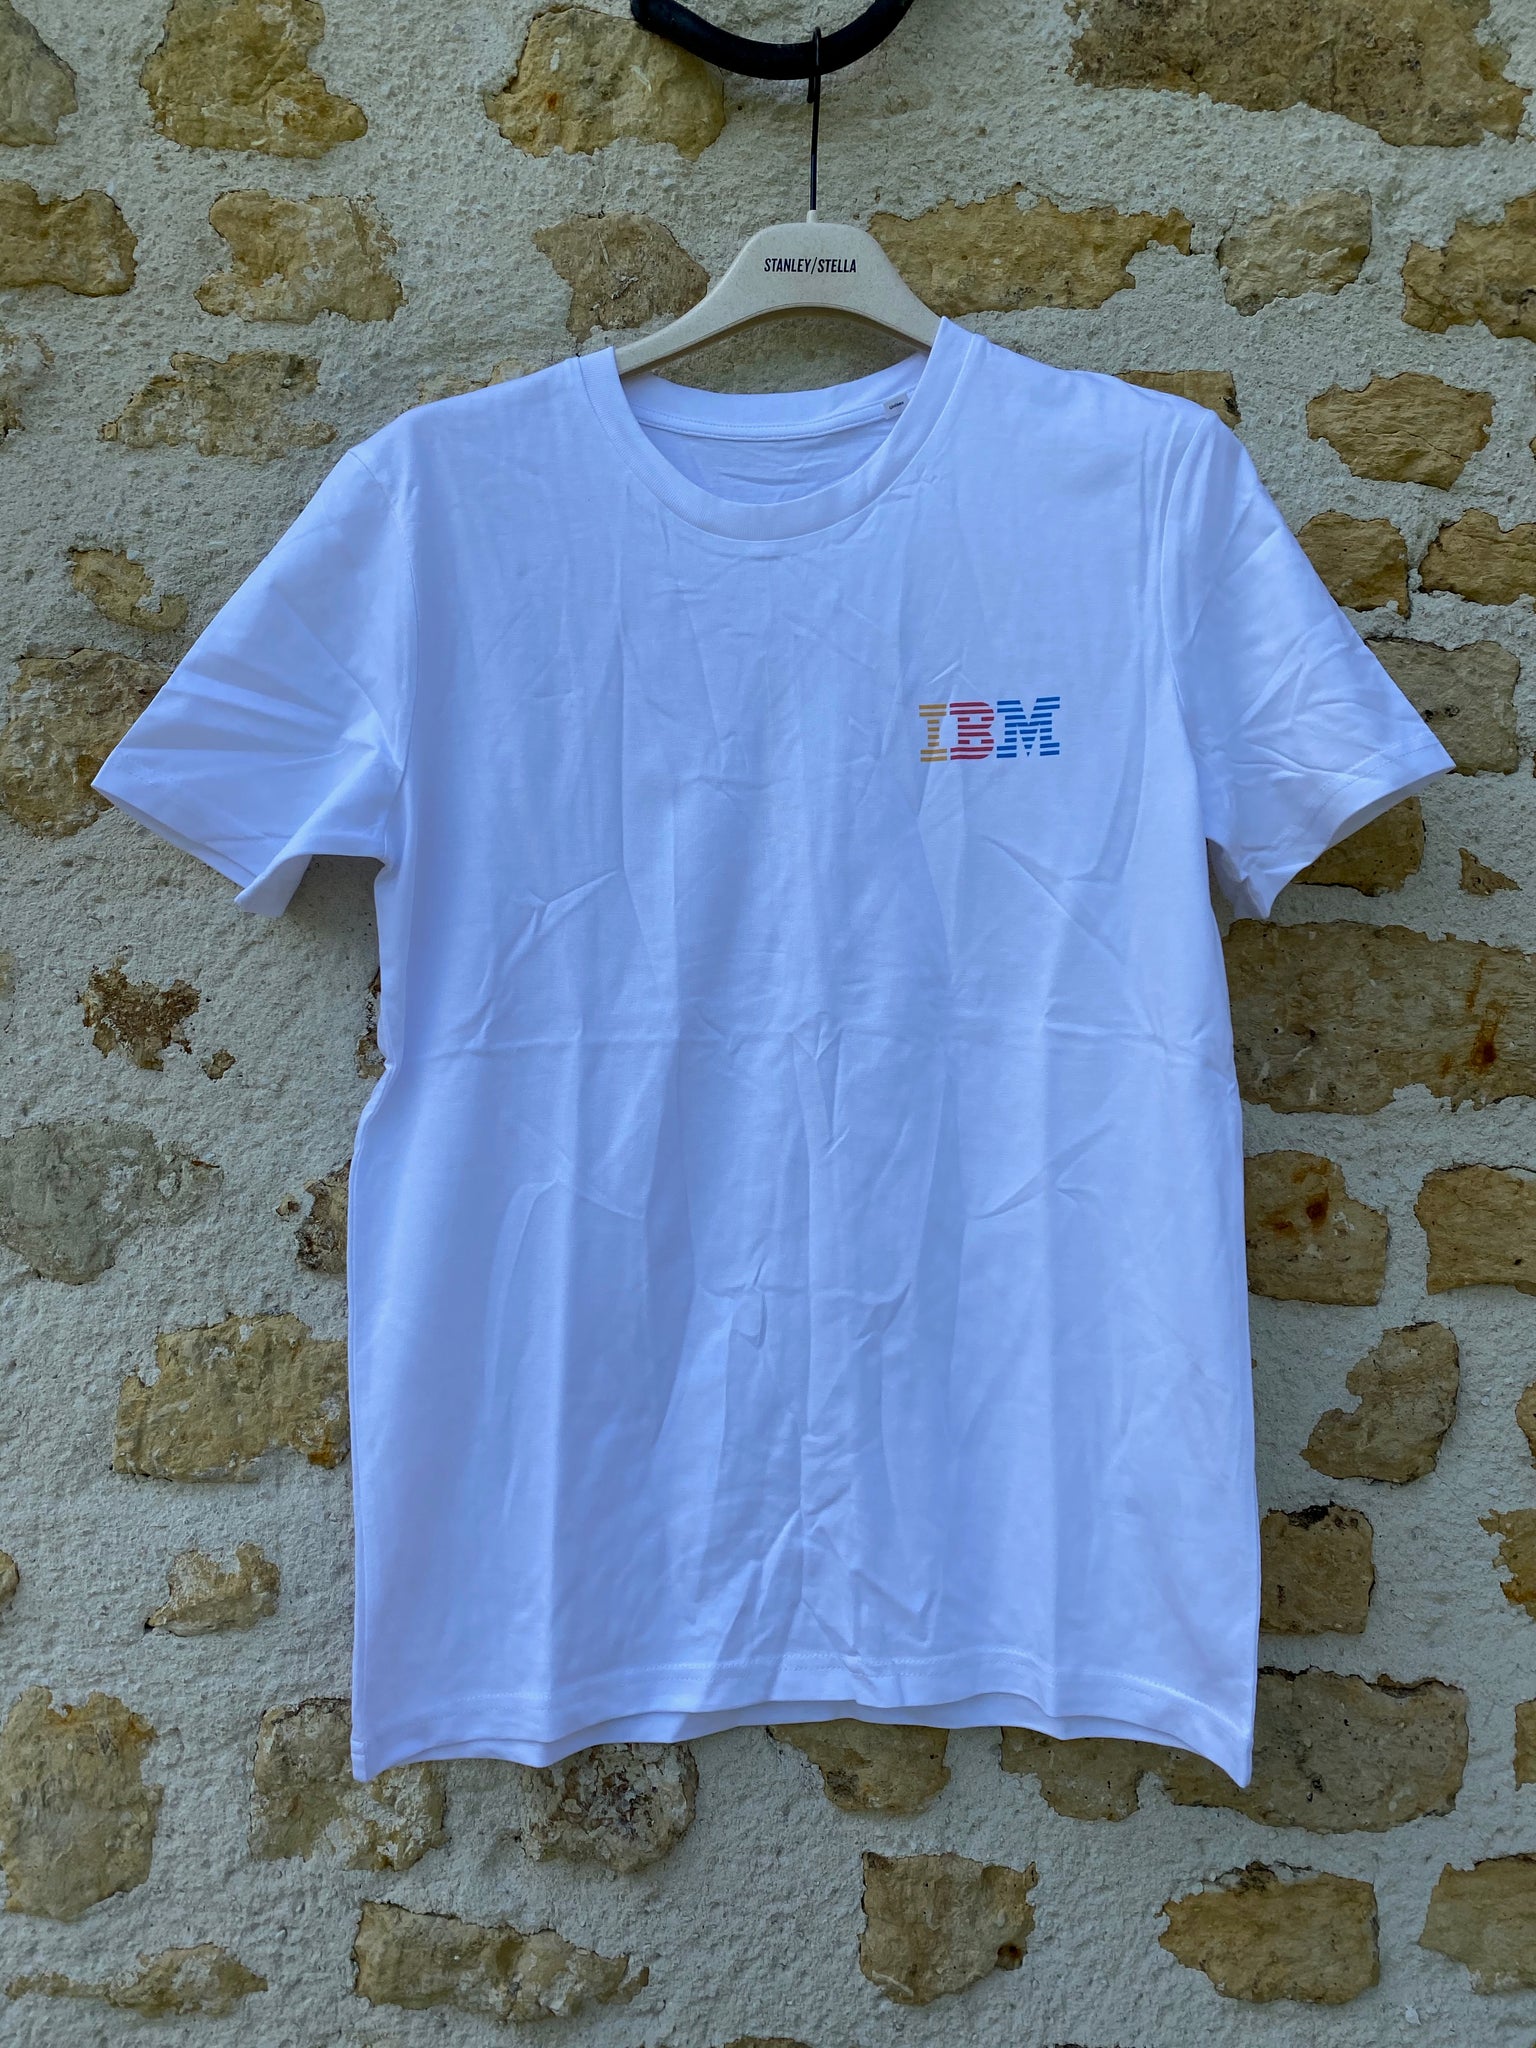 T shirt IBM vintage